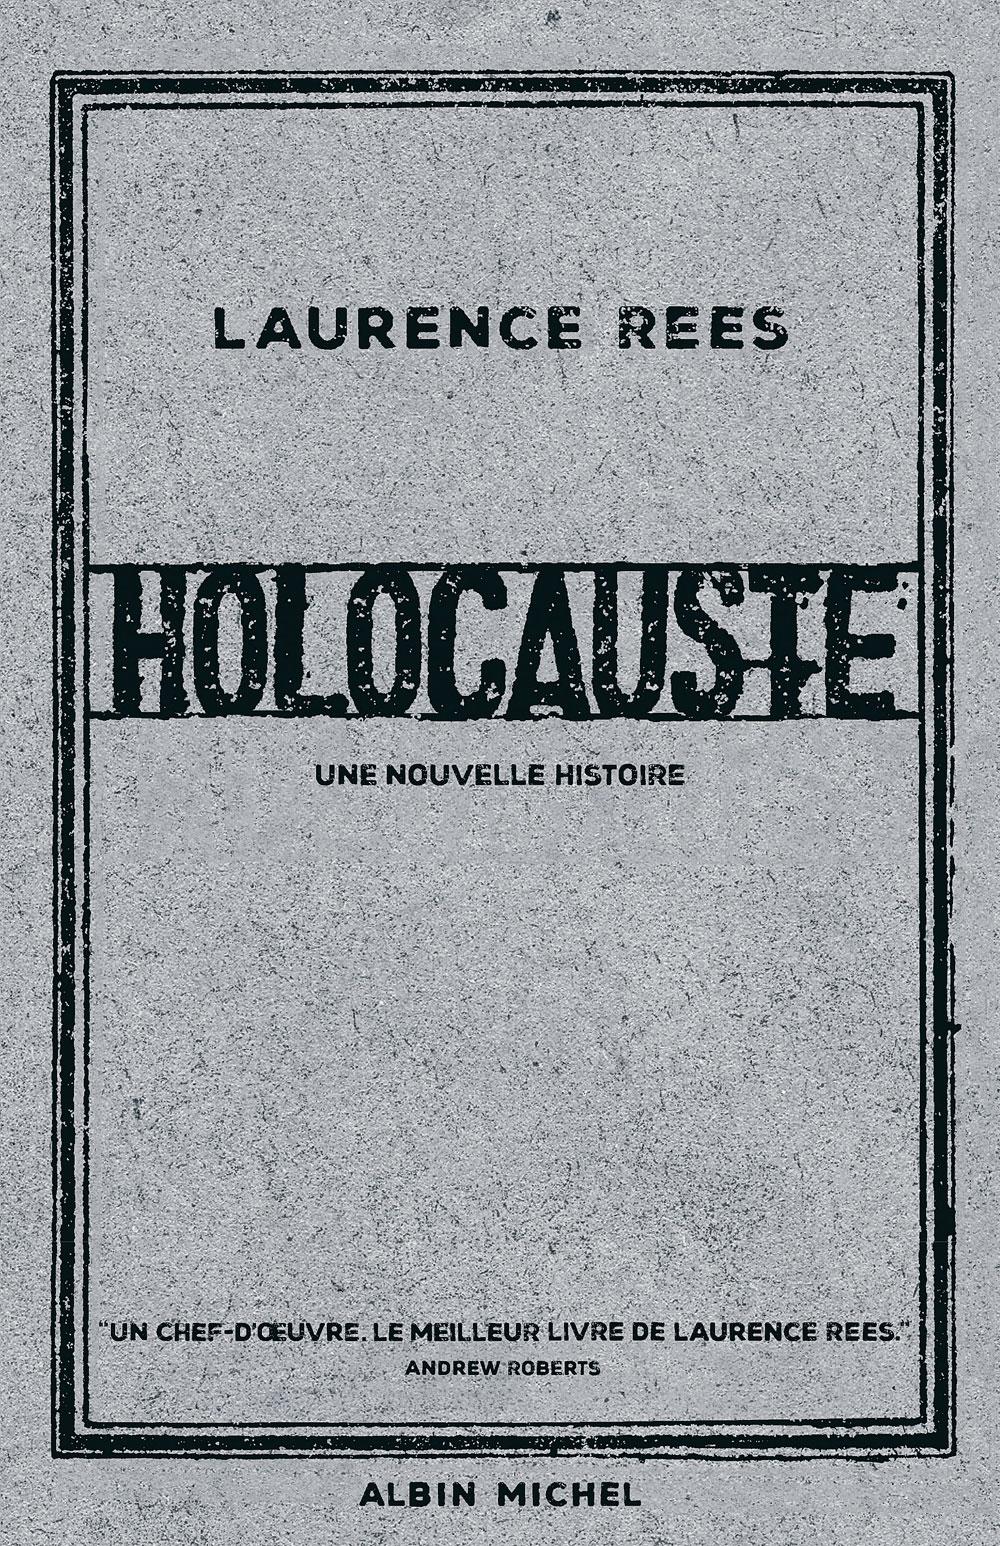 (1) Holocauste. Une nouvelle histoire, par Laurence Rees, traduit de l'anglais par Christophe Jaquet, Albin Michel, 640 p. Extraits : les intertitres sont de la rédaction.